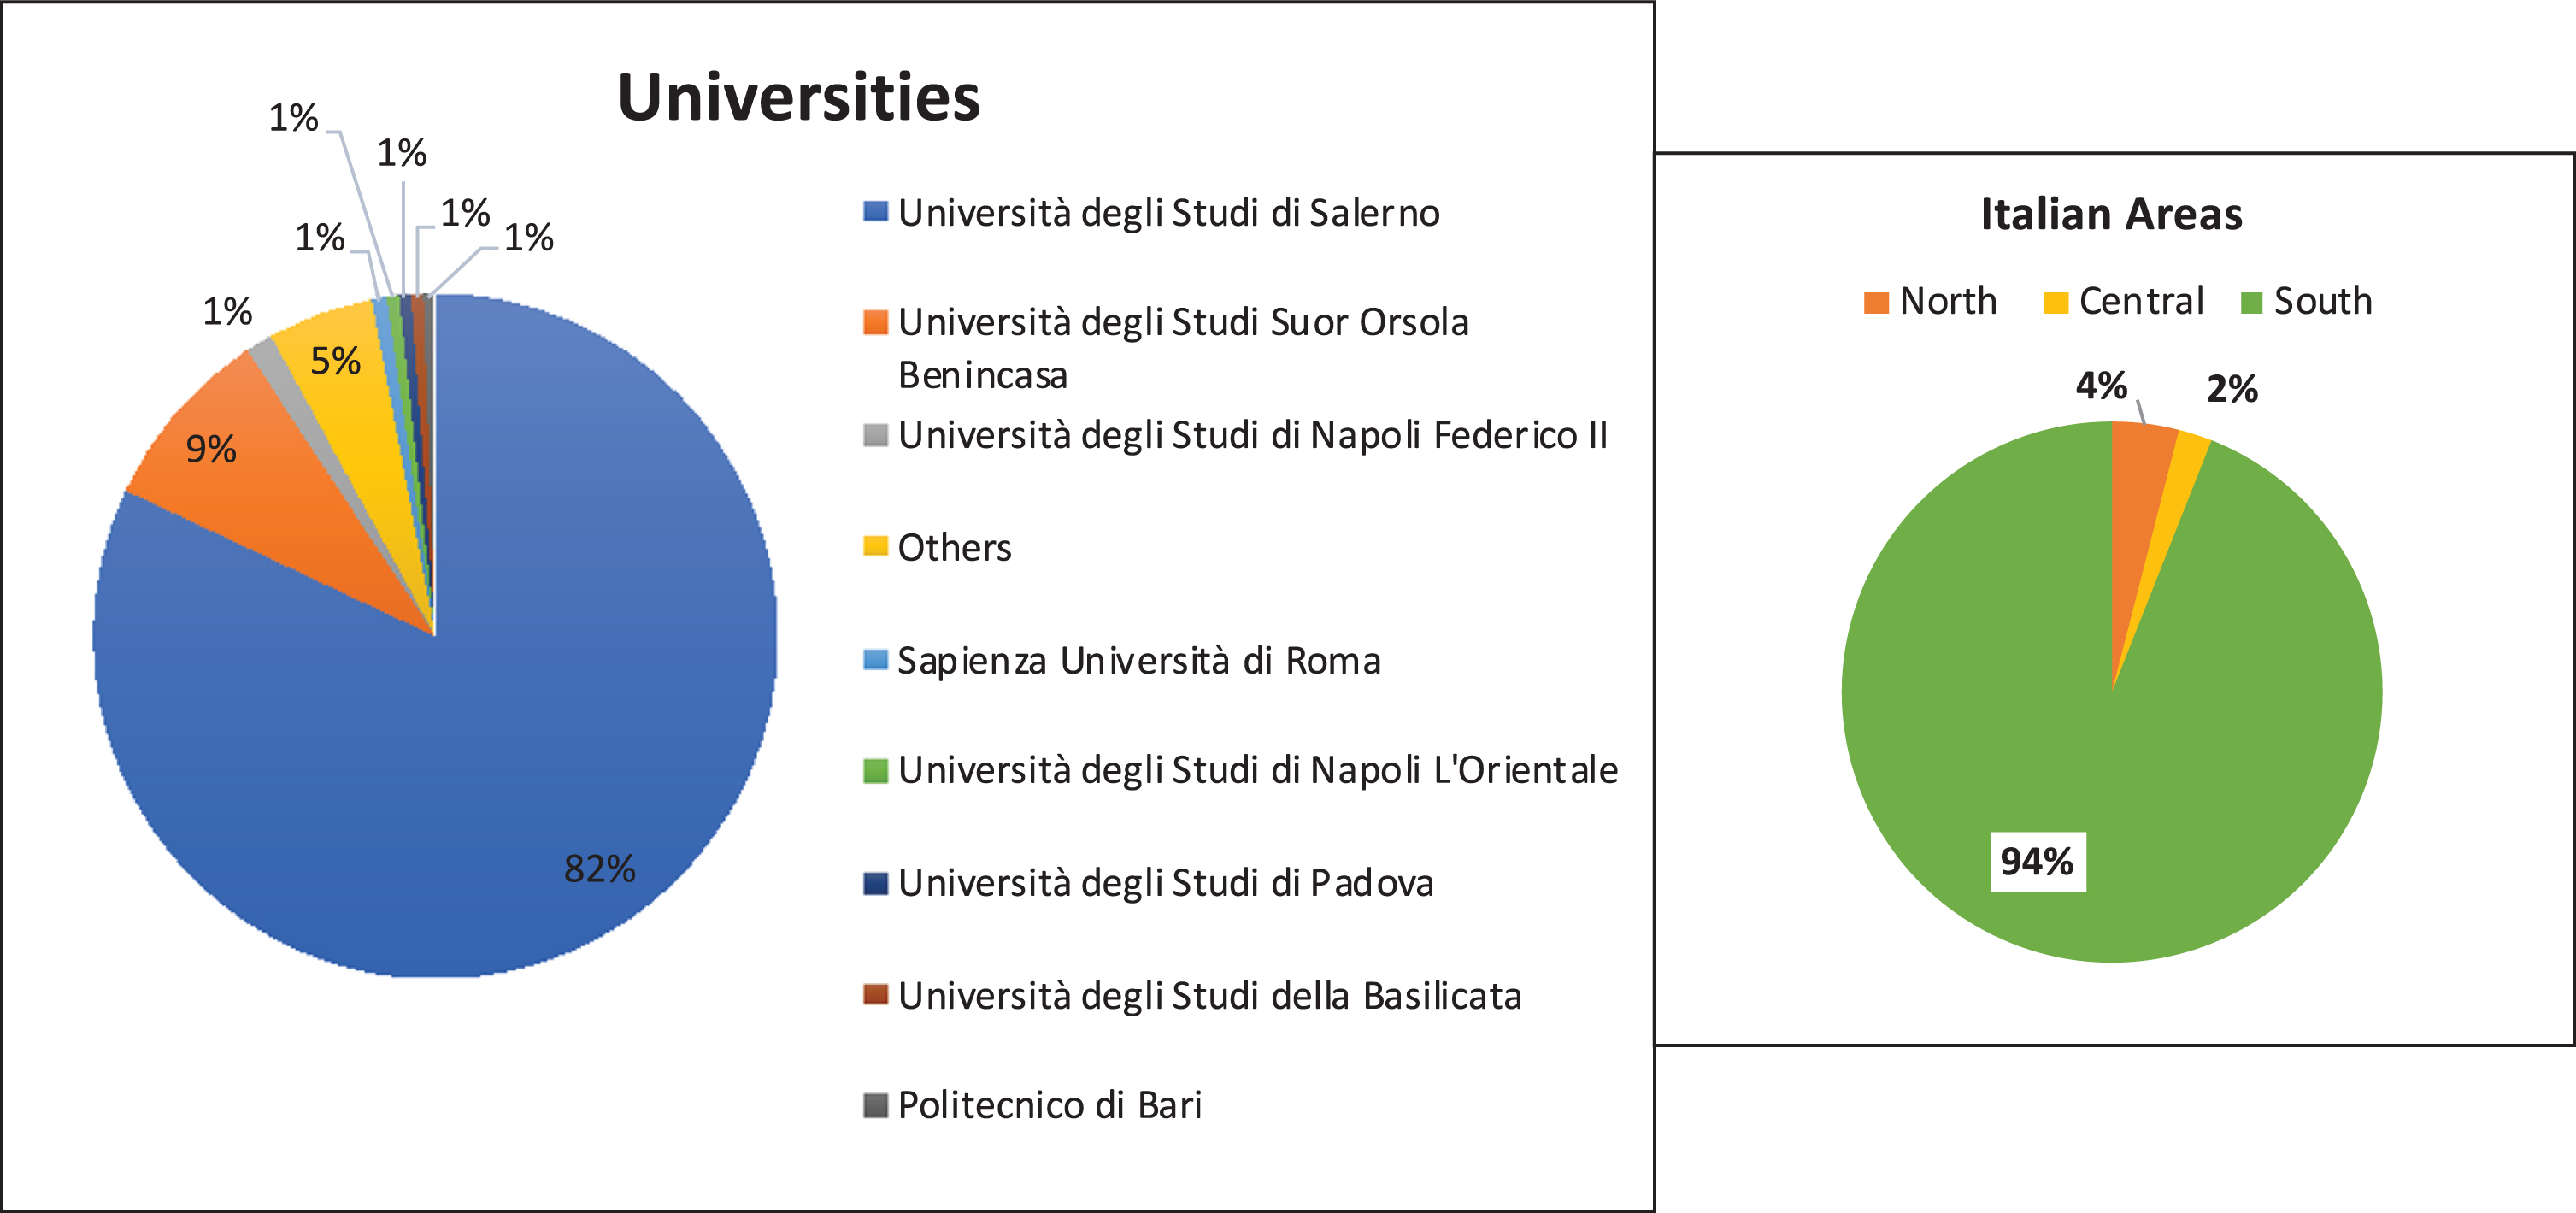 Information about Italian universities. On left there are specifications about universities. On right, specifications about Italian areas.